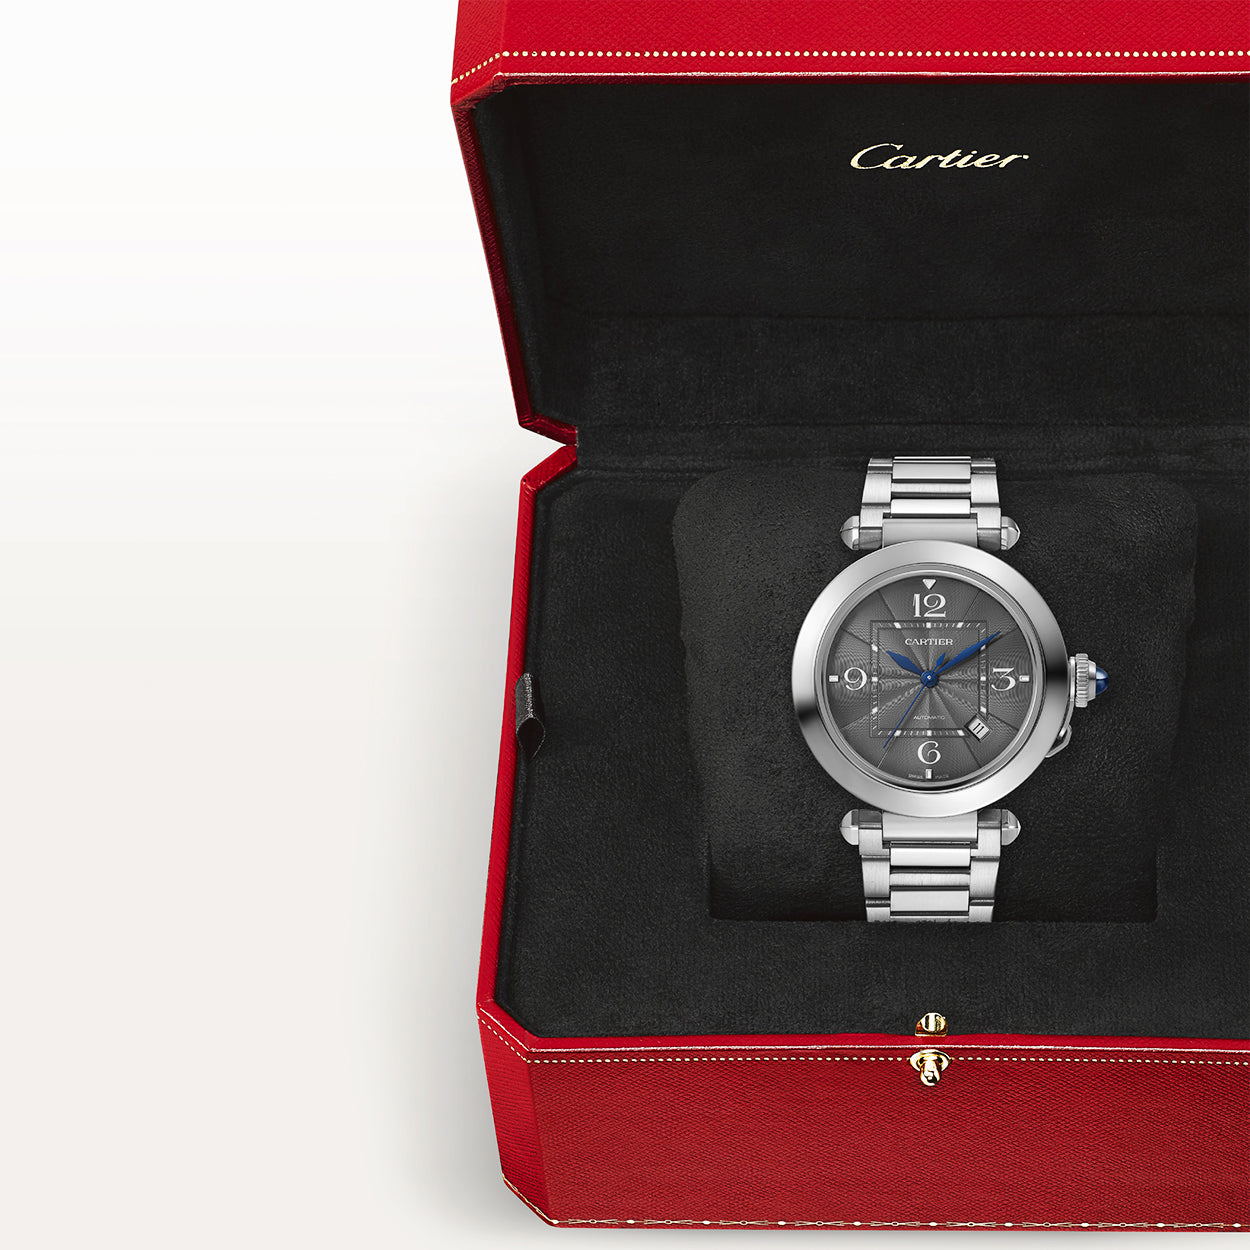 Pasha de Cartier 41mm Grey Dial Men's Automatic Bracelet Watch